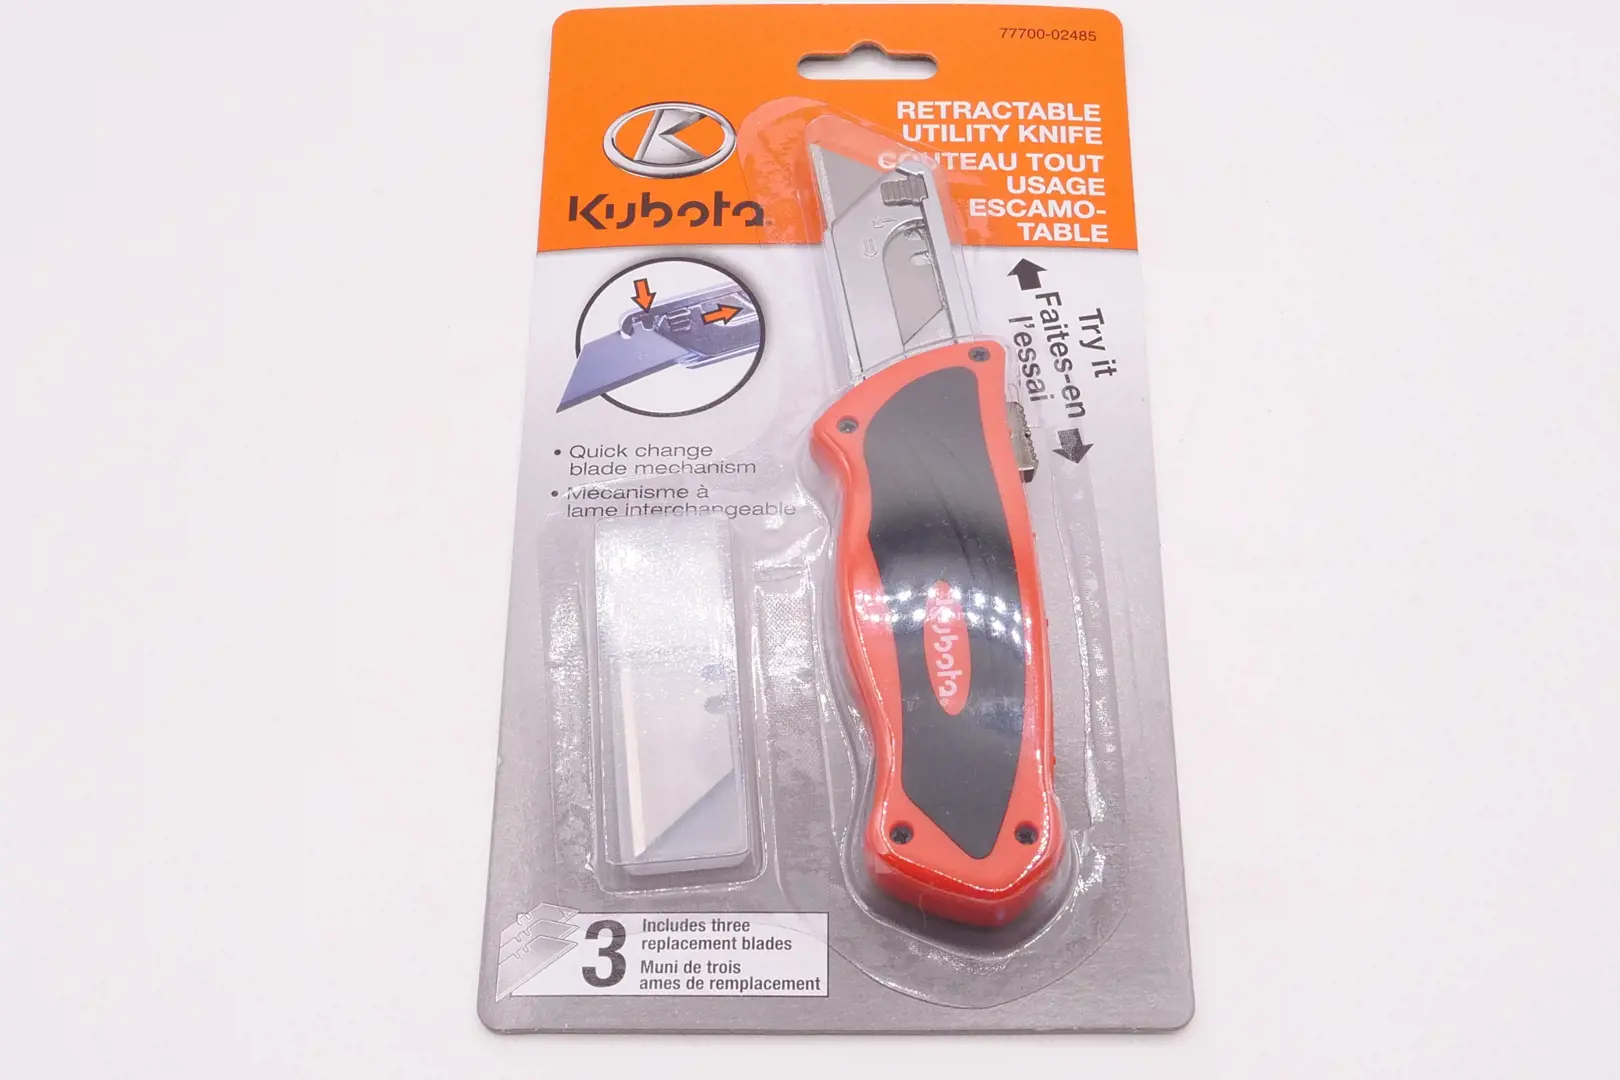 Image 1 for #77700-02485 Kubota Retractable Utility Knife